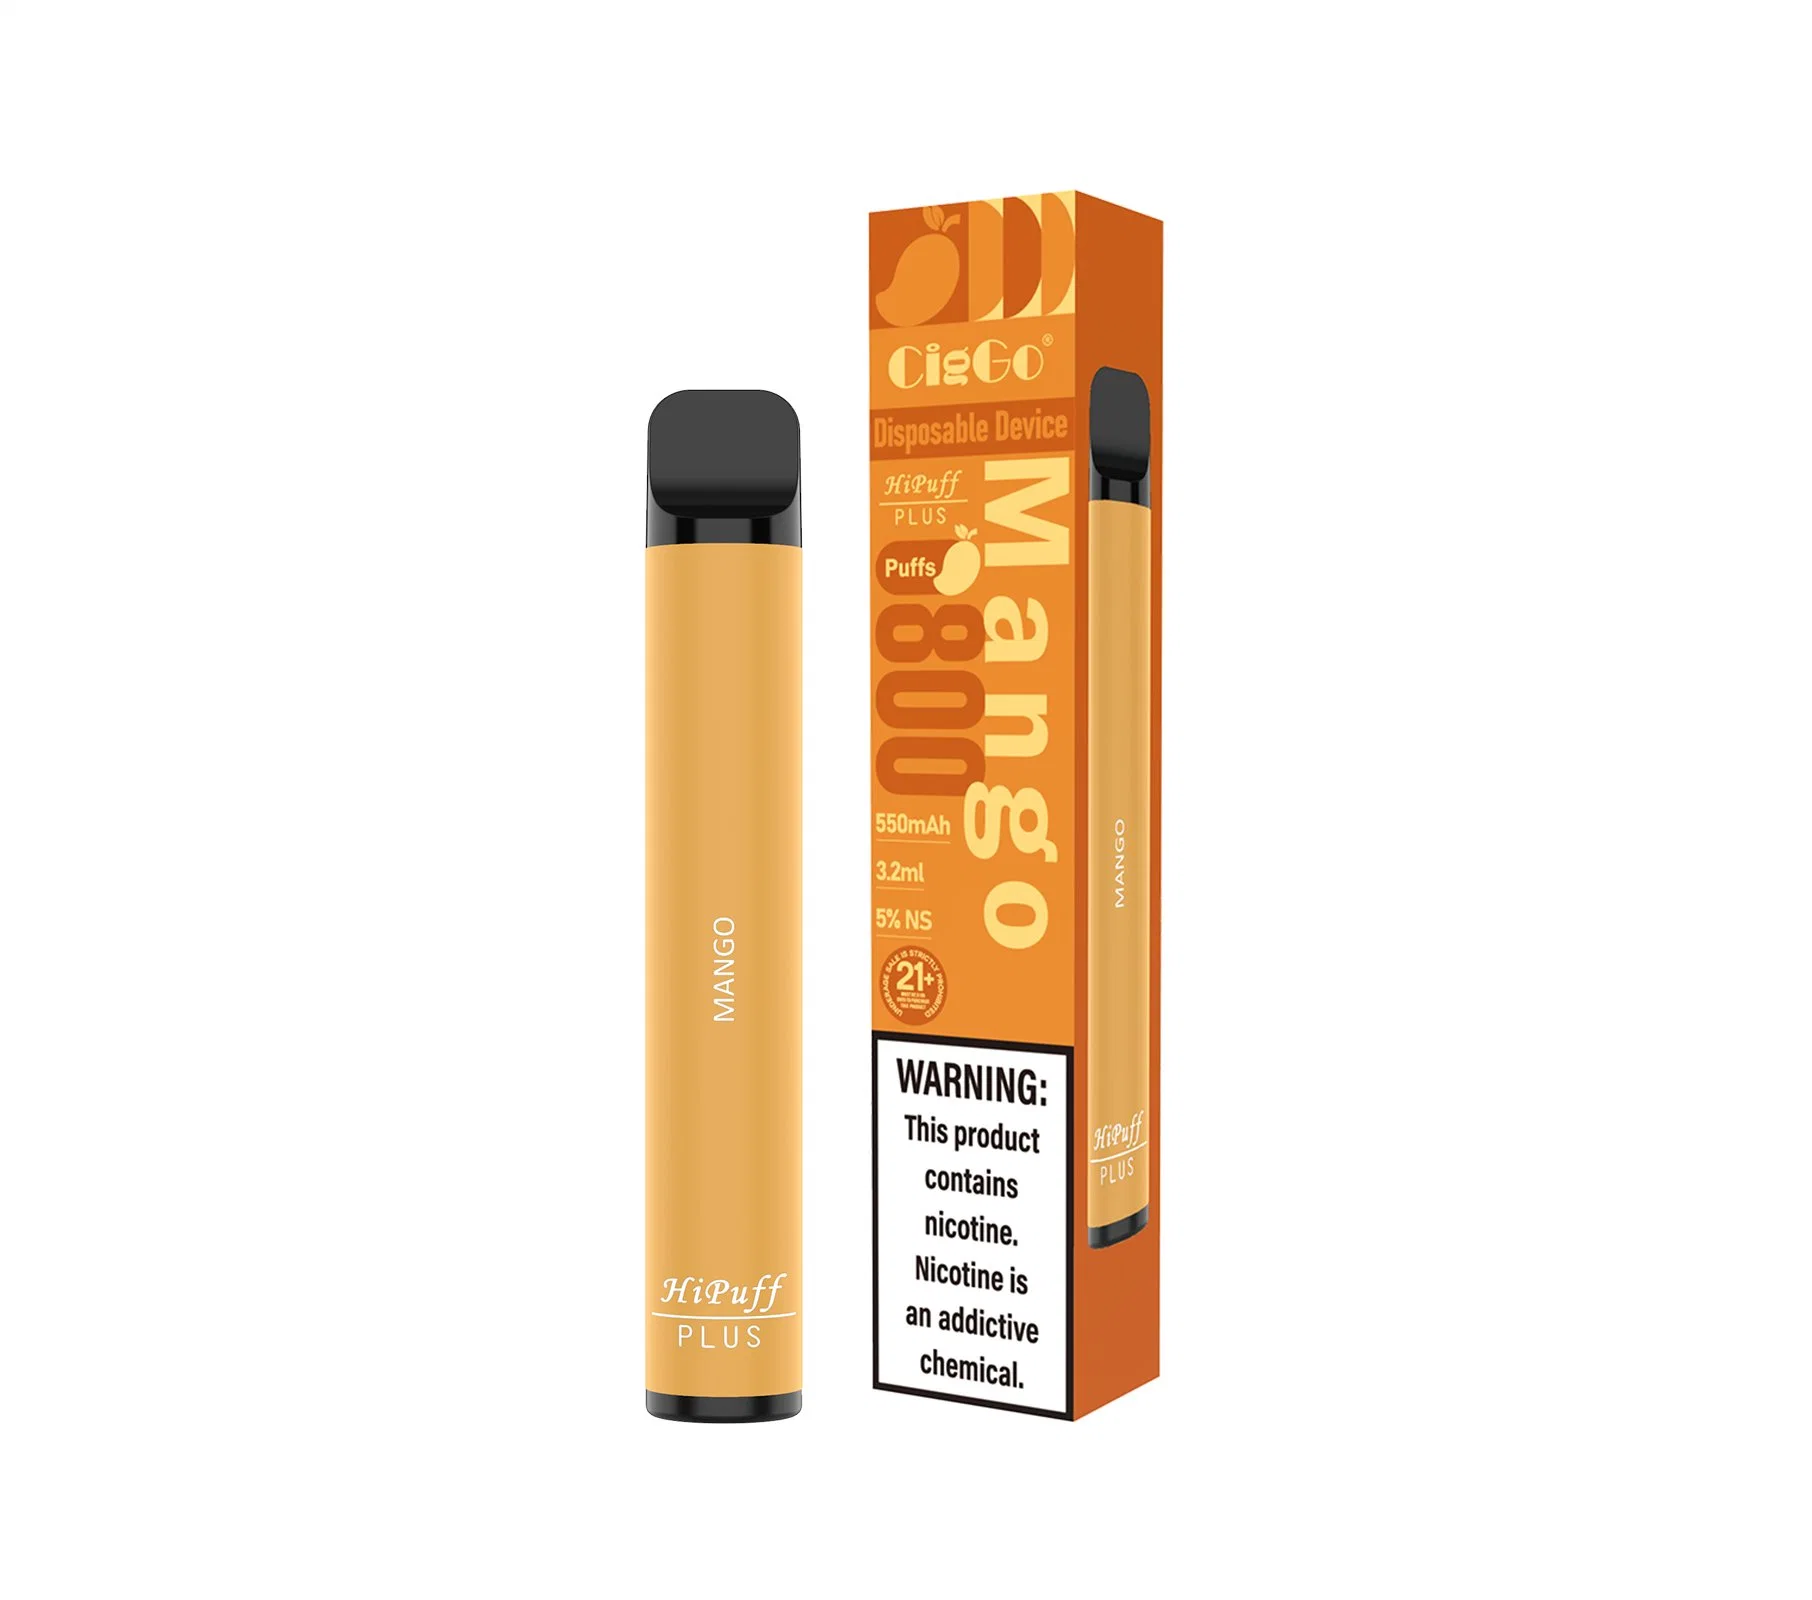 Hot Selling Disposable/Chargeable E Cigarette 550mAh 3.2ml 800 Puffs Ciggo Plus Pod Vape Kit Pod Vape Mod